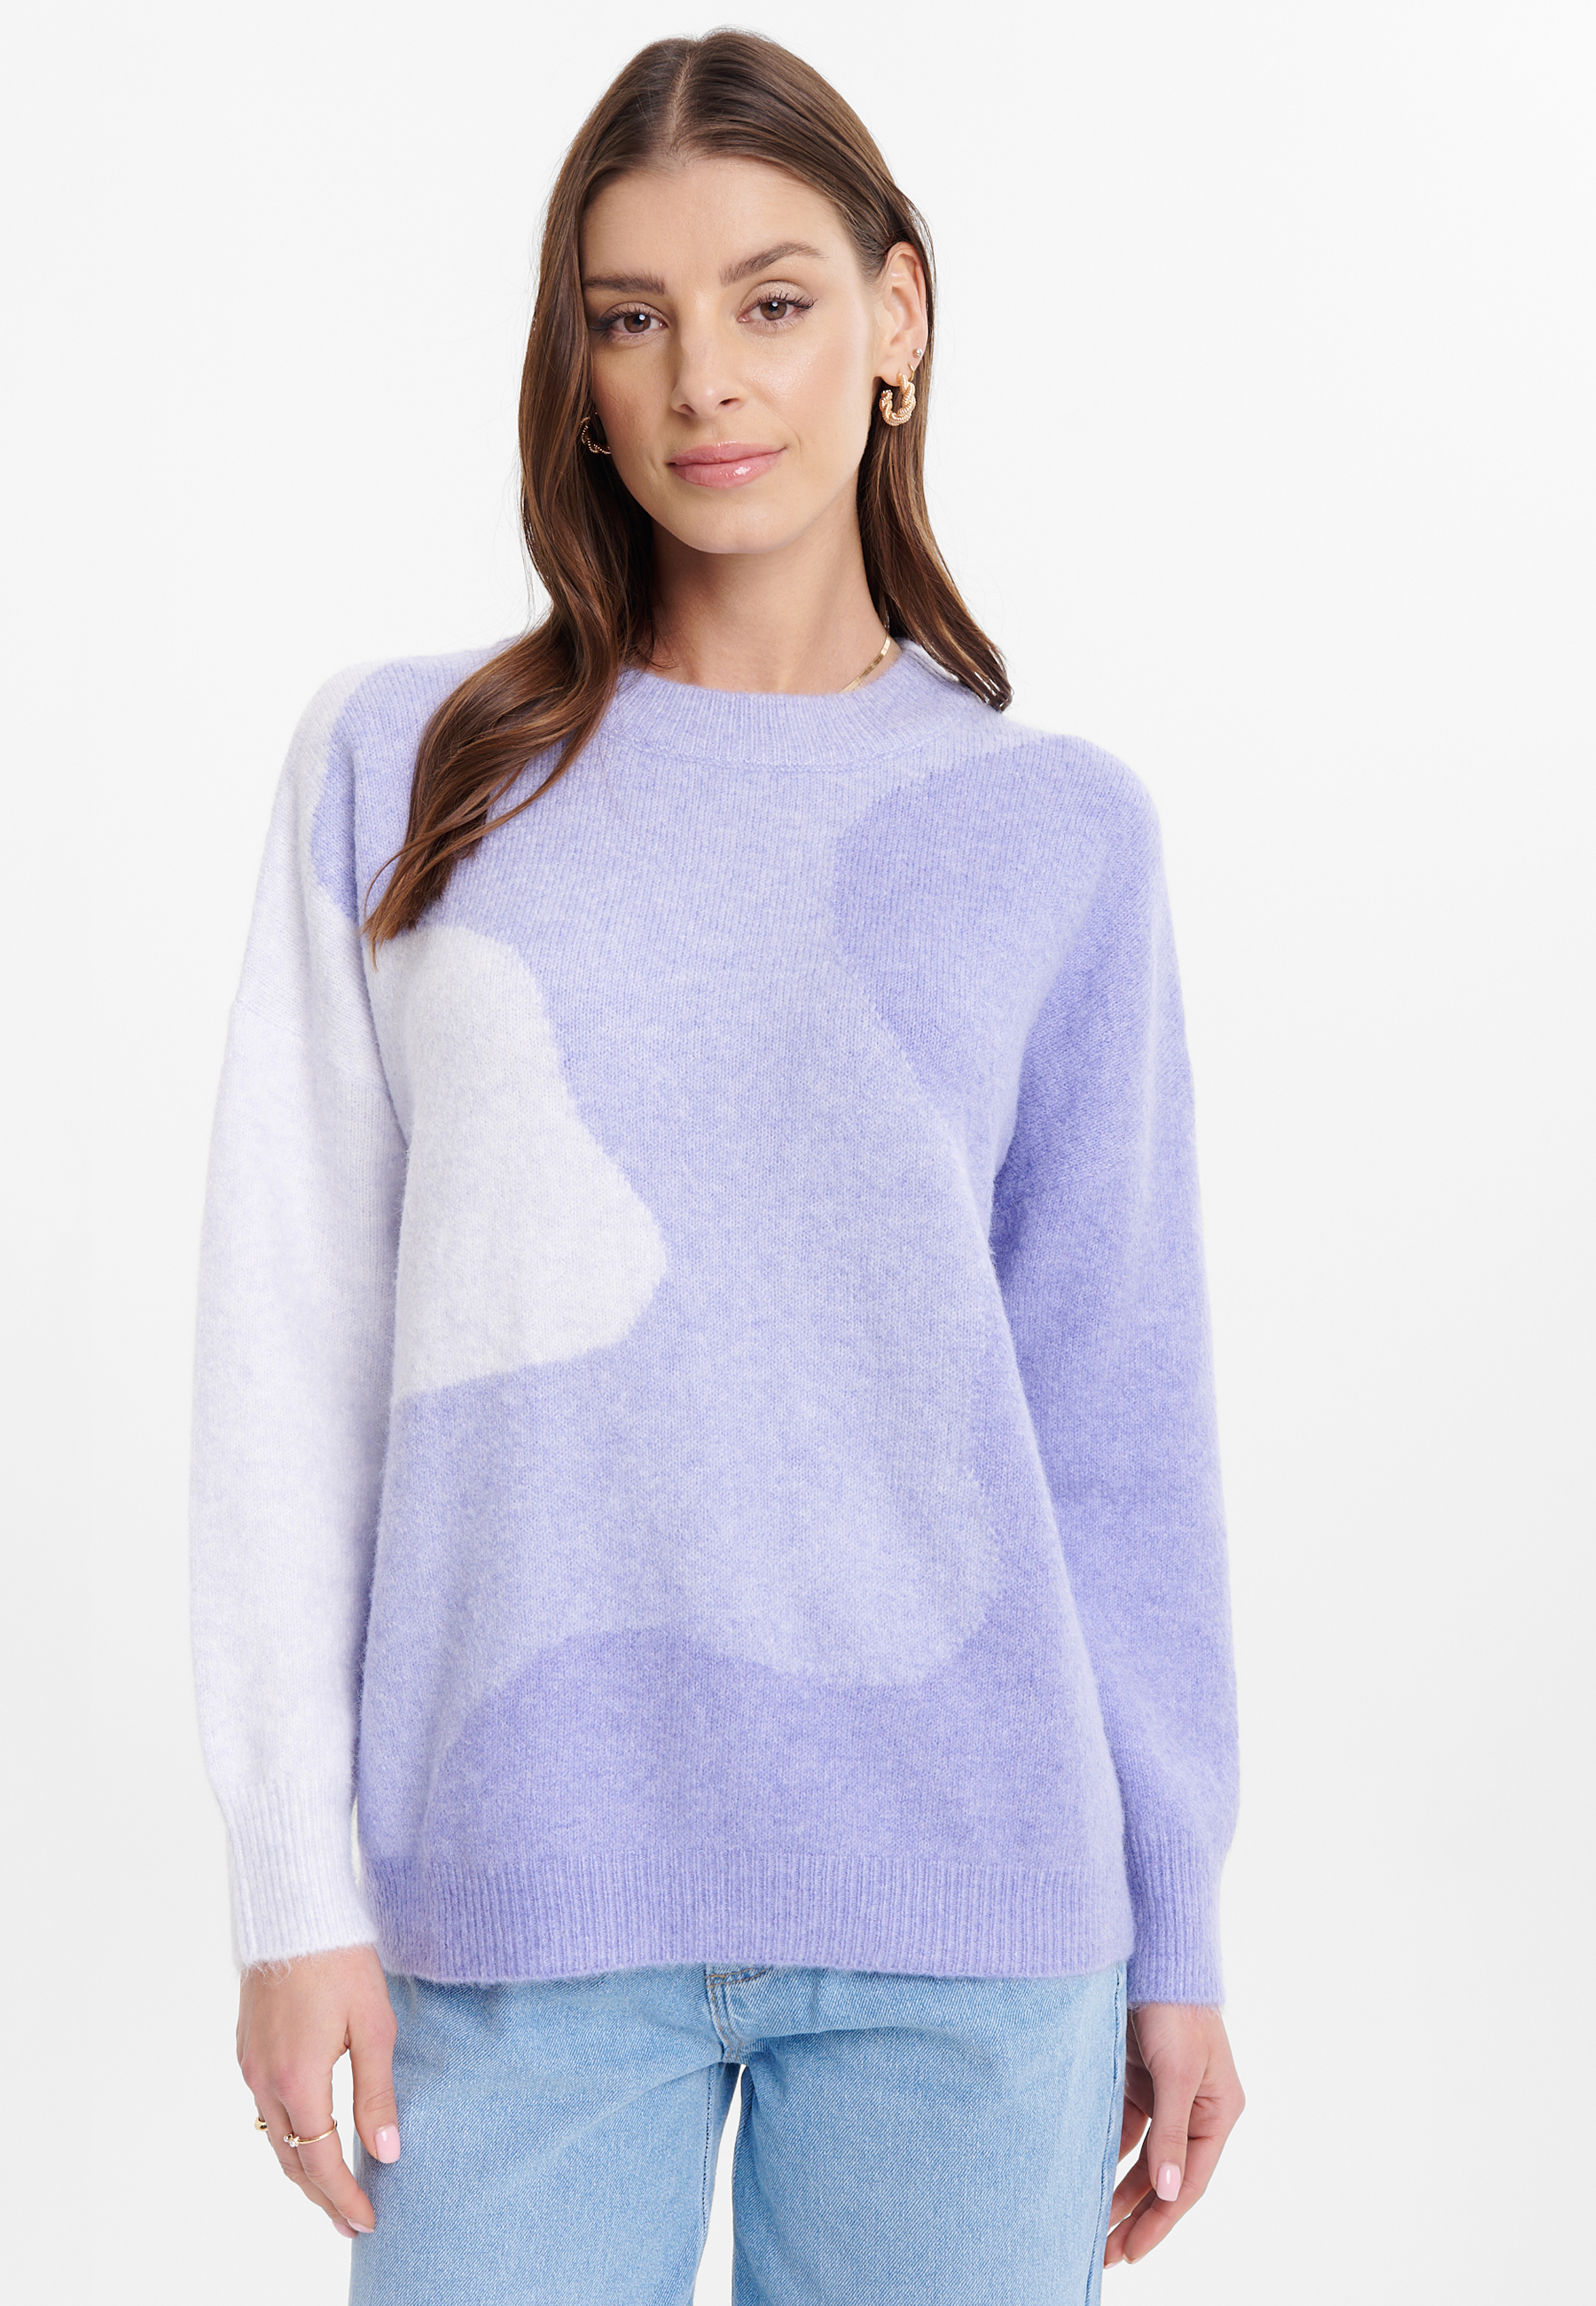 Luźny sweter z abstrakcyjnym wzorem, fiolet